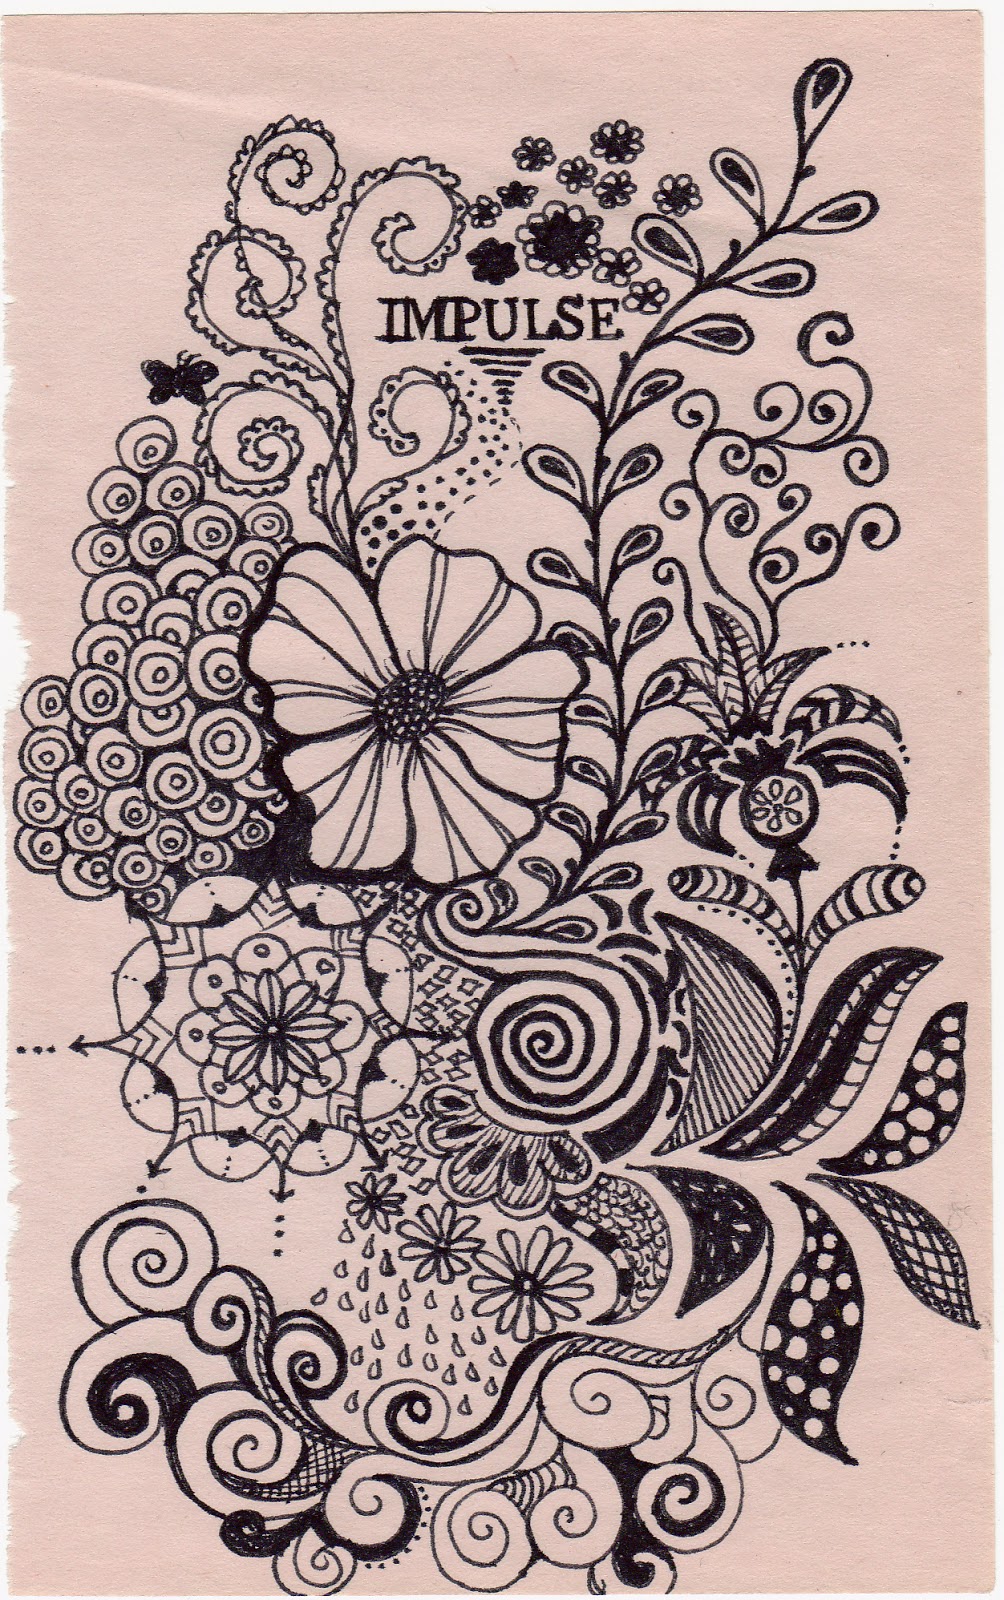 Flower Doodle - "IMPULSE" | Brushnpaper